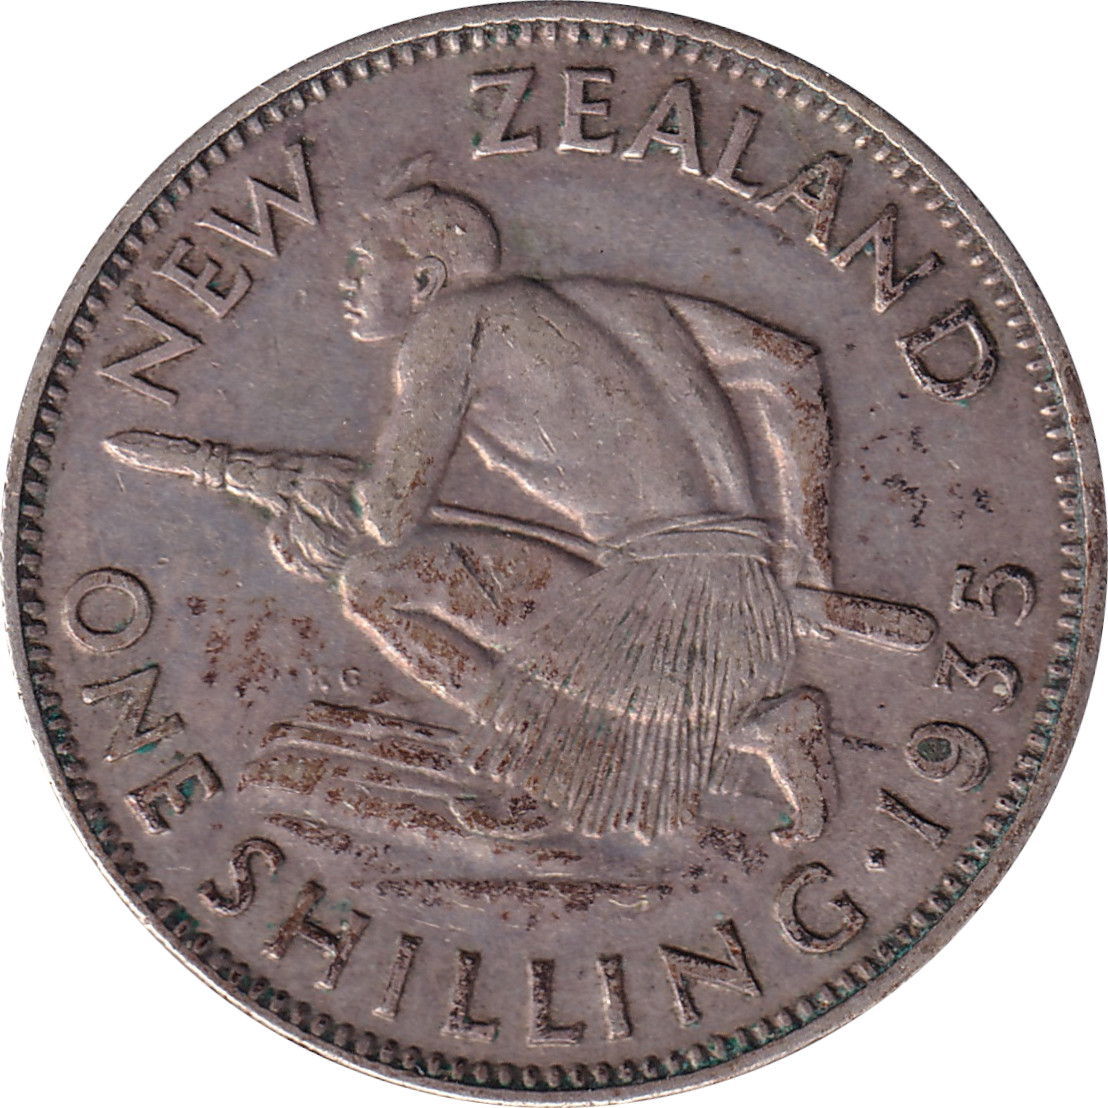 1 shilling - George V